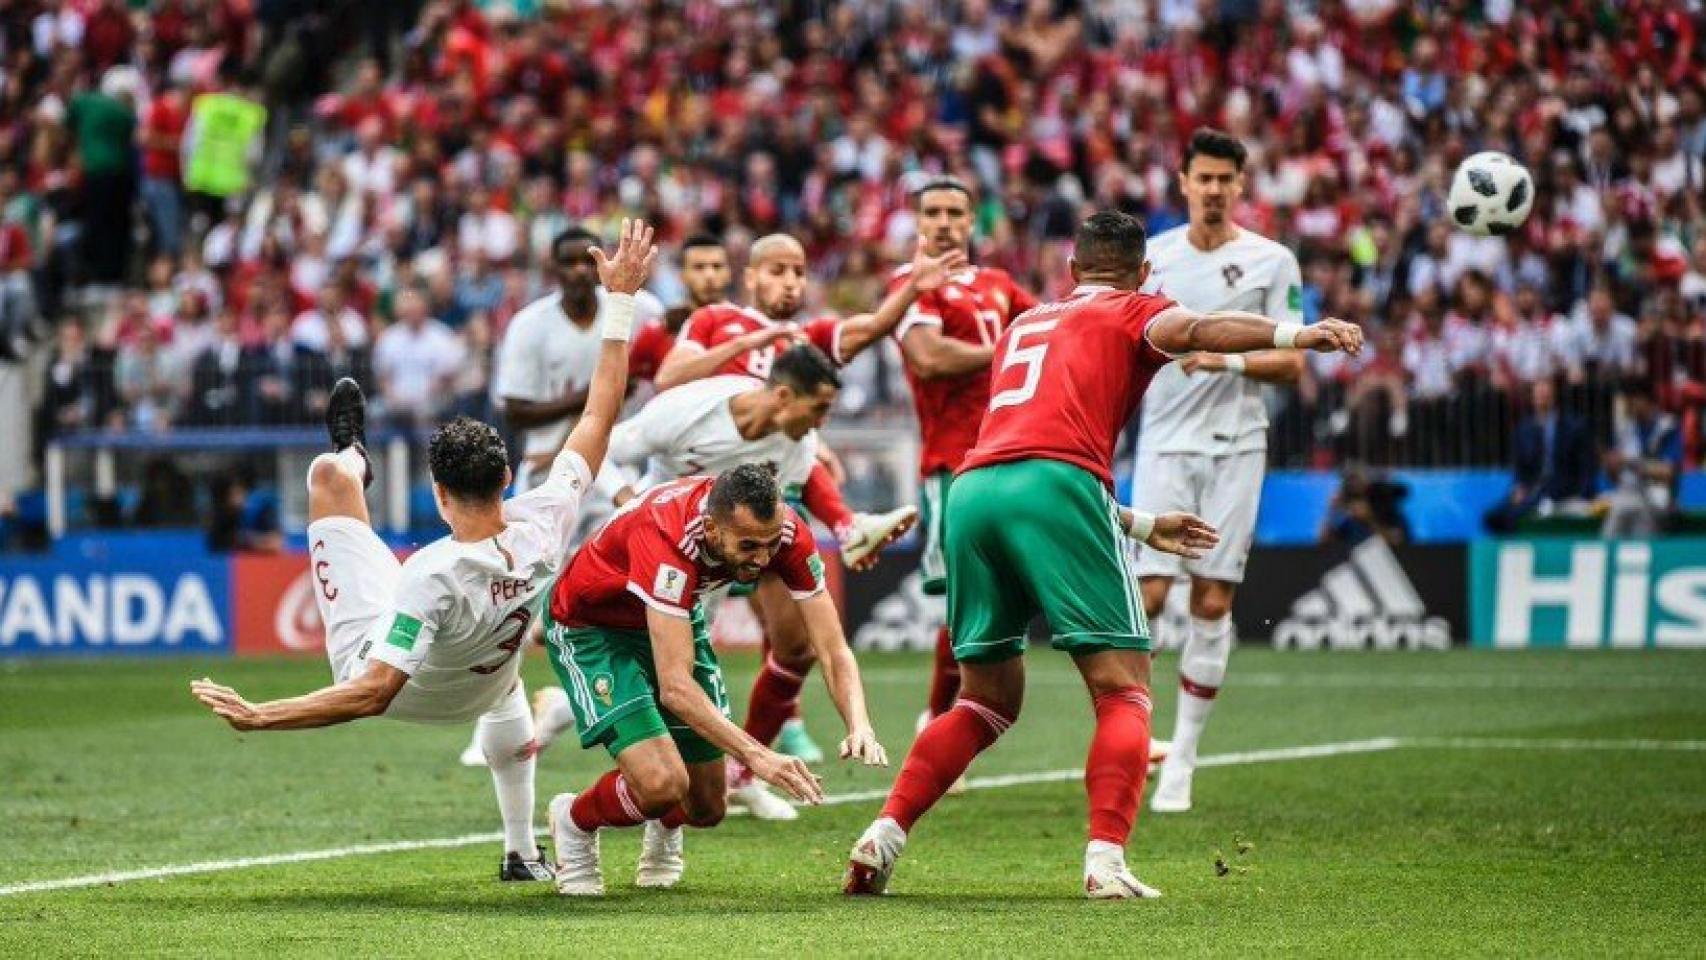 Cristiano en la acción en la que marca el gol de la victoria ante Marruecos. Foto: Twitter (@Cristiano)